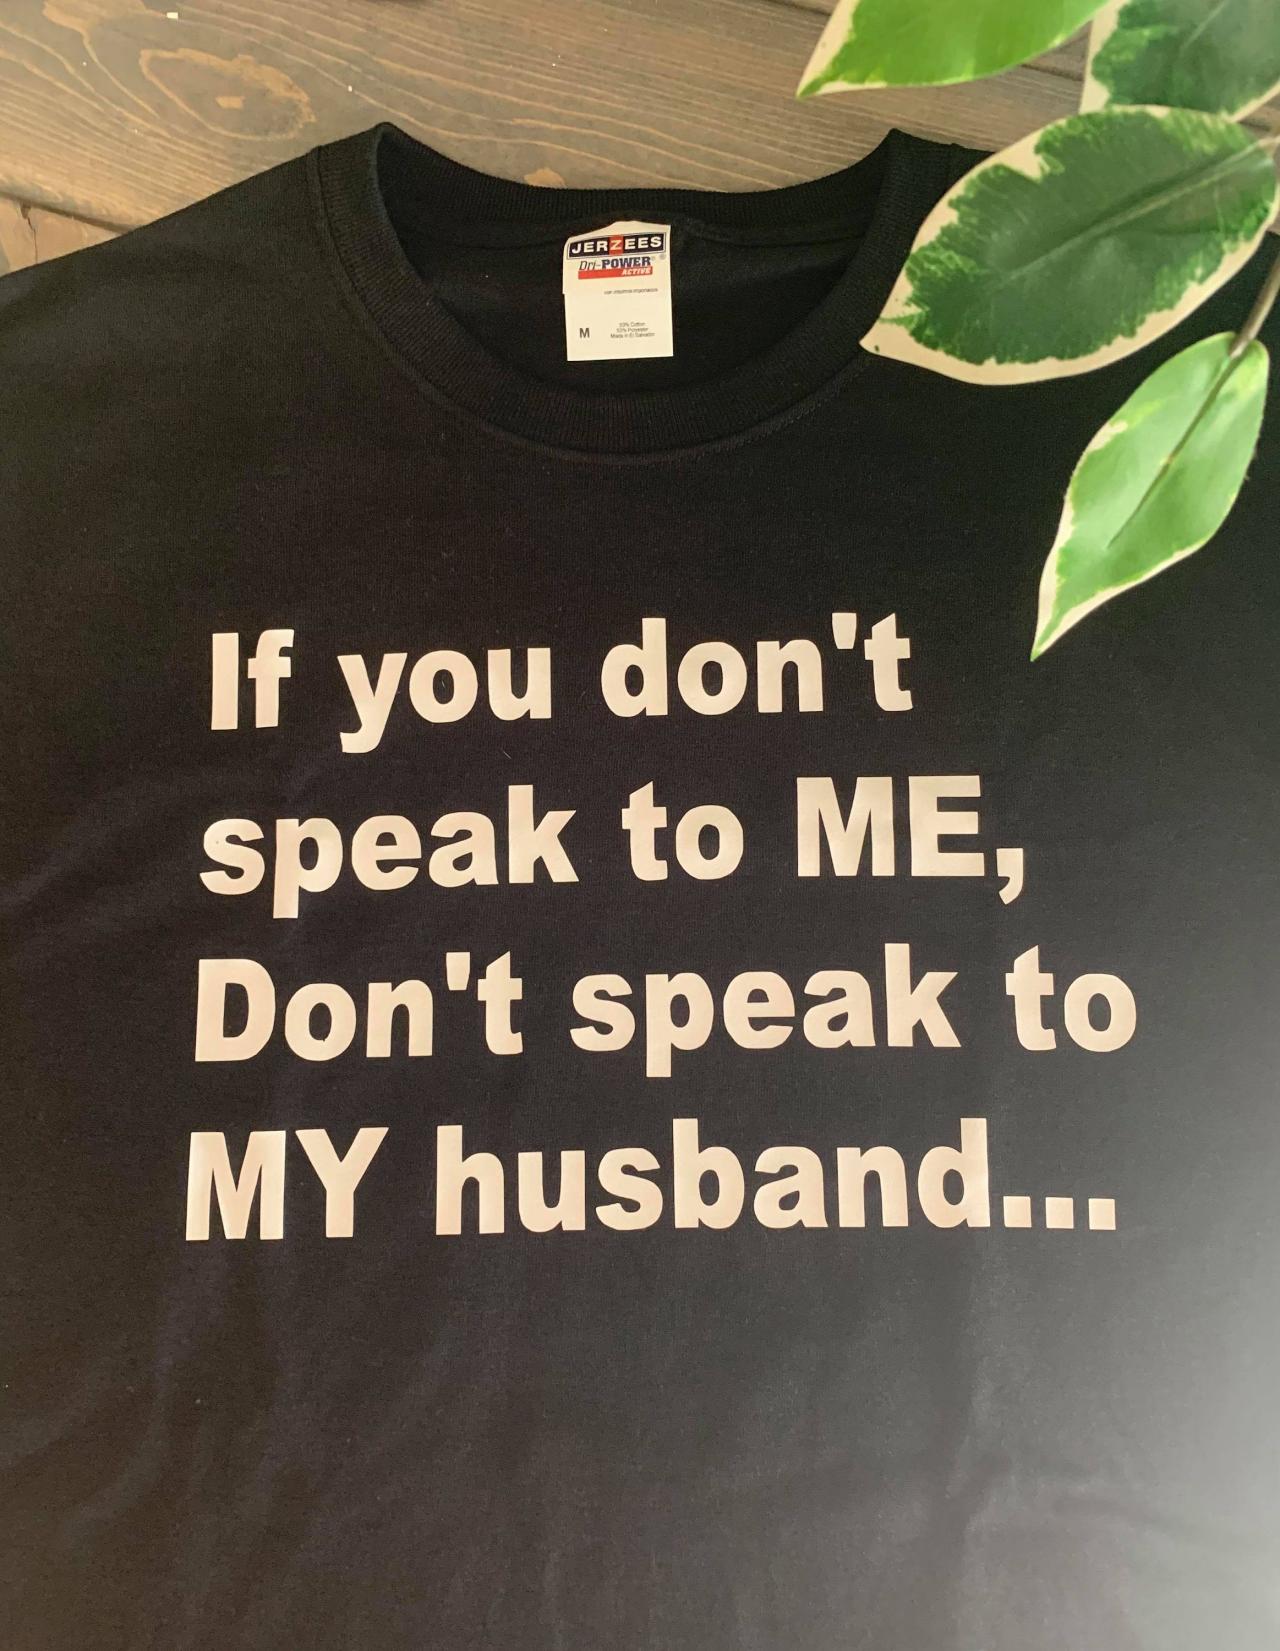 If you don't speak to me Don't speak to my husband... ladies shirt. Unisex shirt. Fun ladies shirt